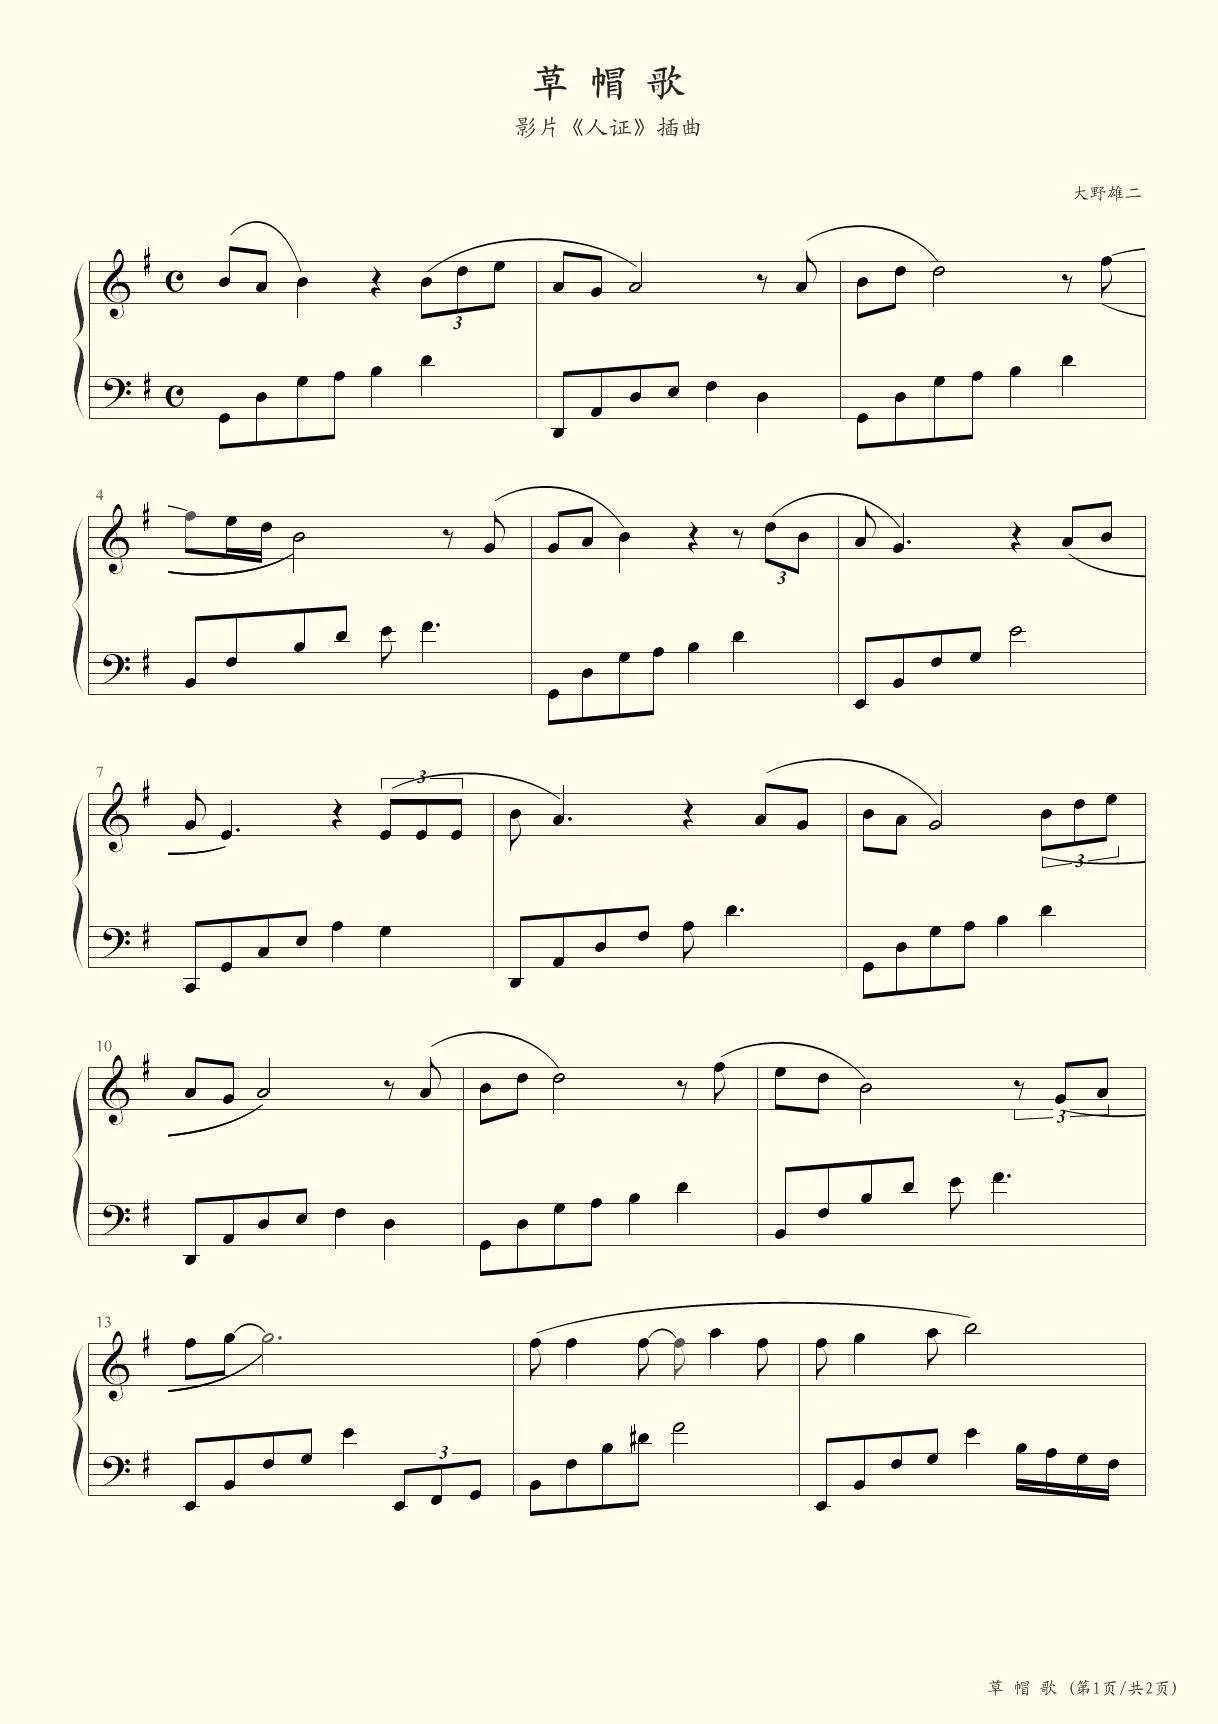 草帽歌五线谱预览2-钢琴谱文件（五线谱、双手简谱、数字谱、Midi、PDF）免费下载